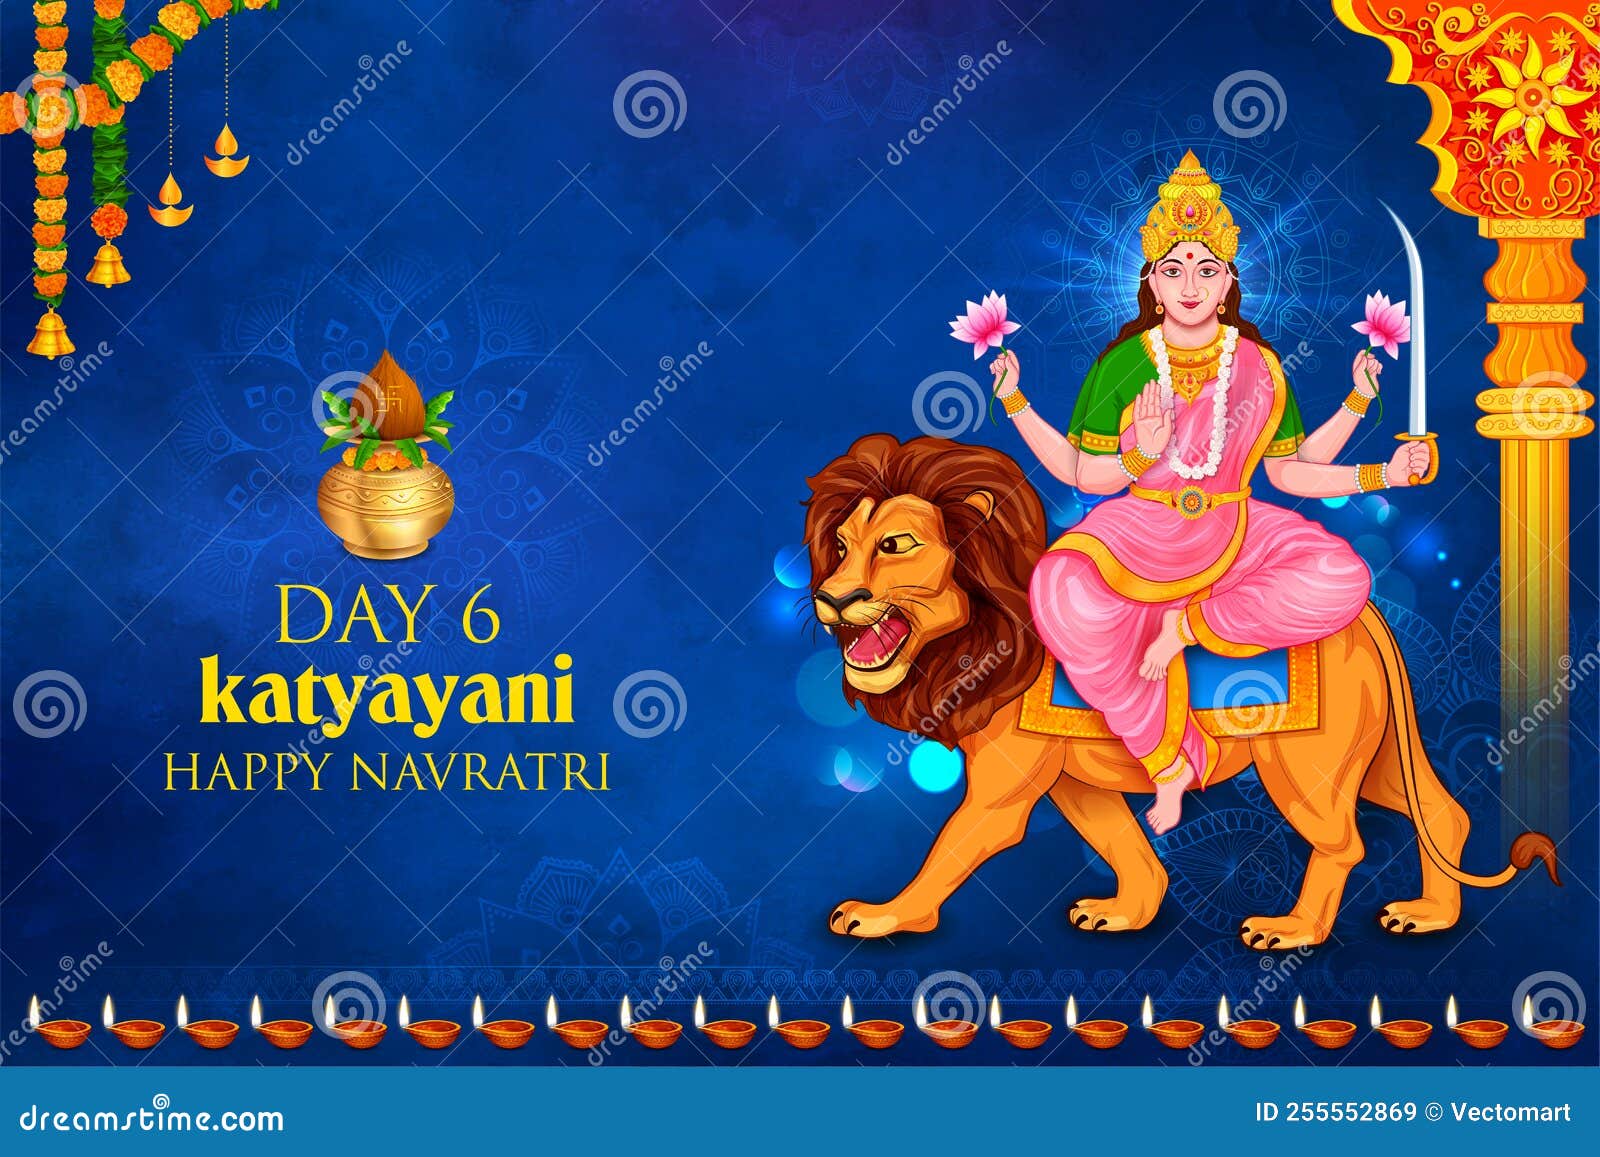 Goddess Katyayani Devi for the Sixth Navadurga of Navratri ...